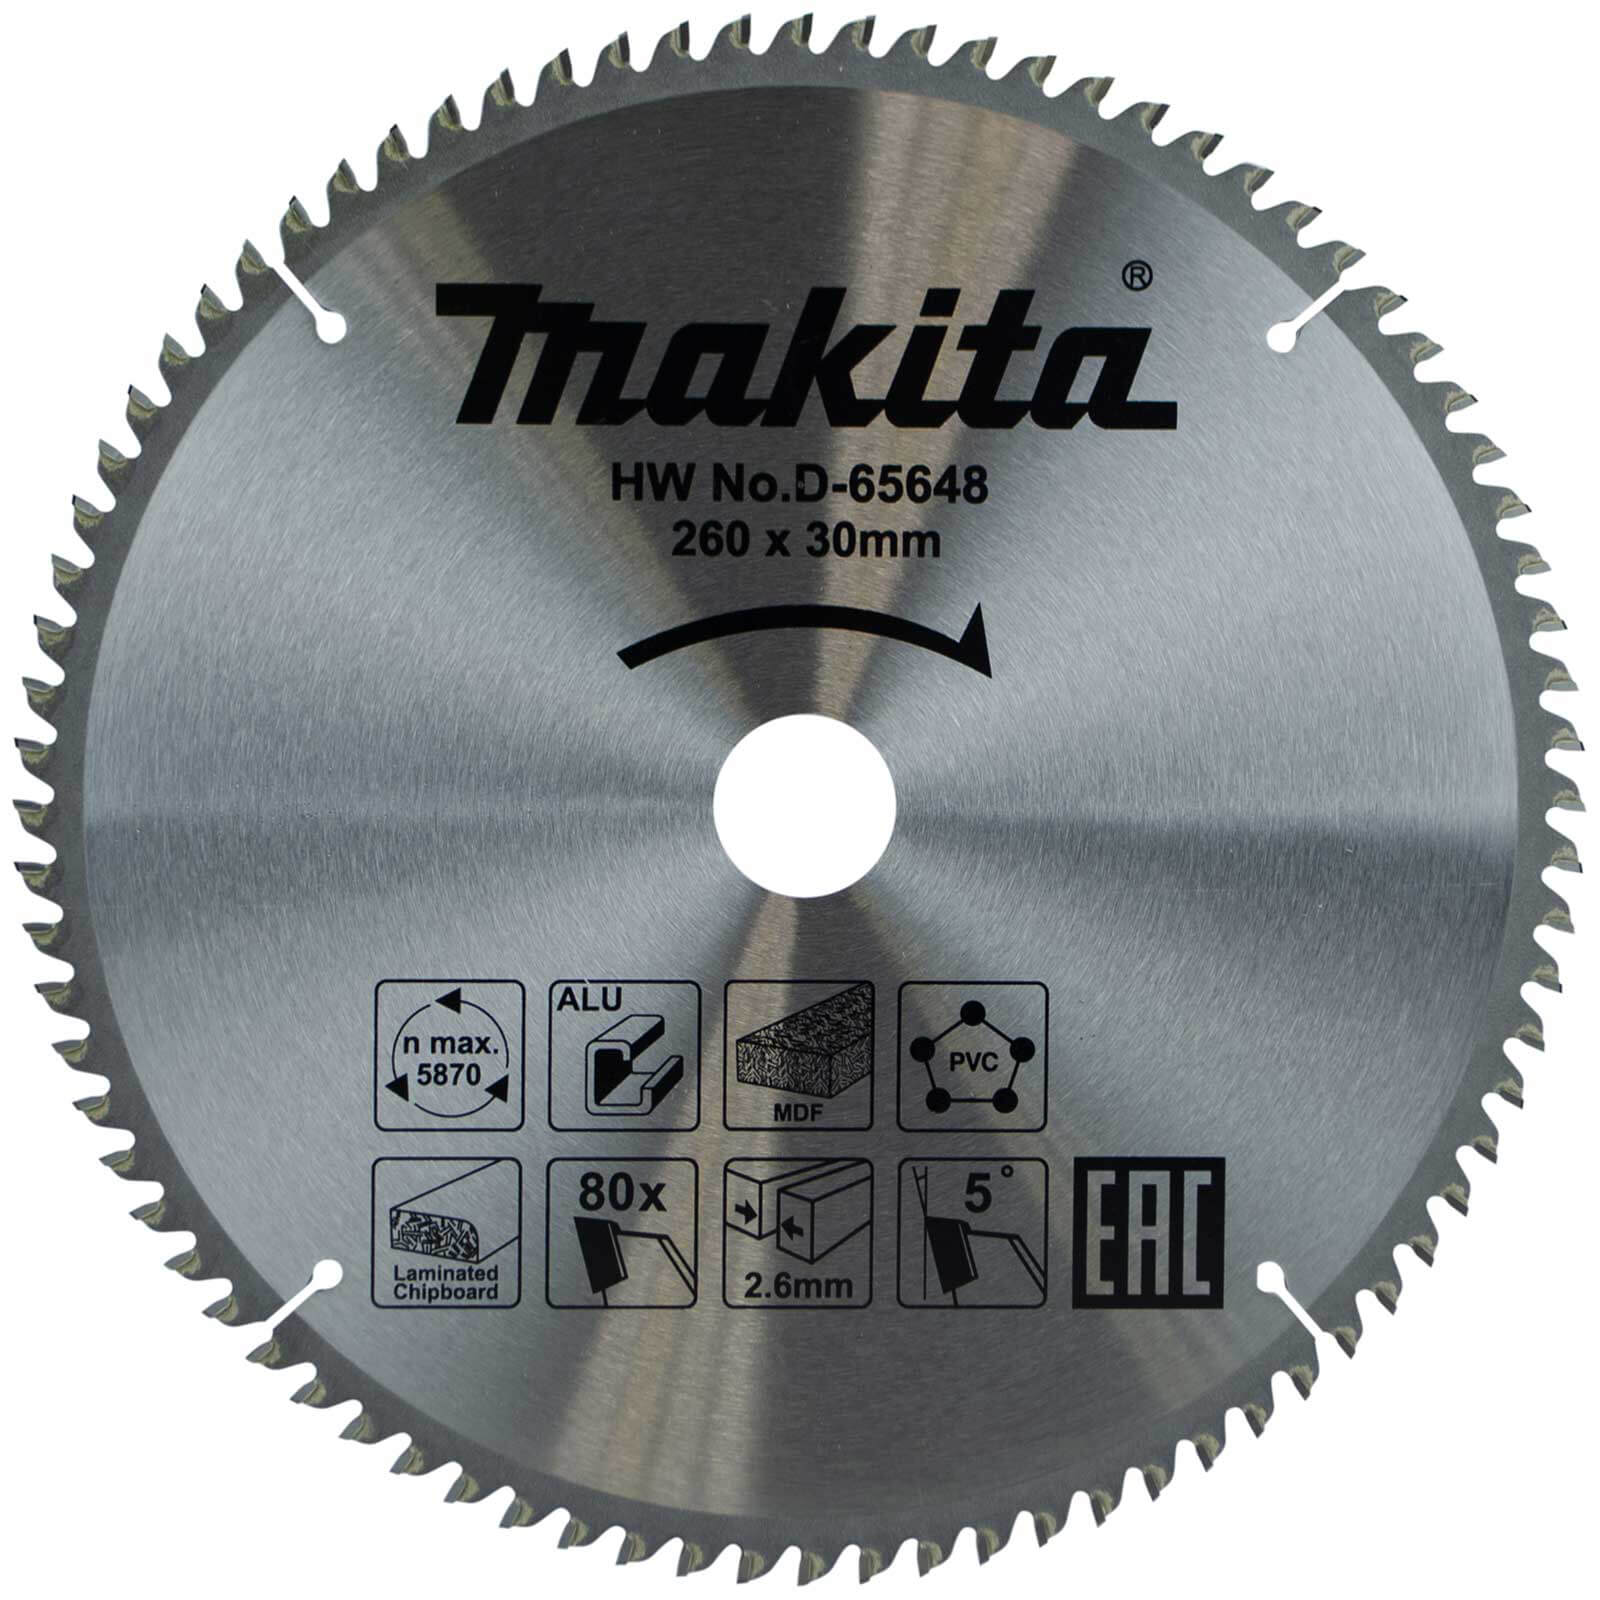 Photo of Makita Multi Purpose Circular Saw Blade 260mm 80t 30mm